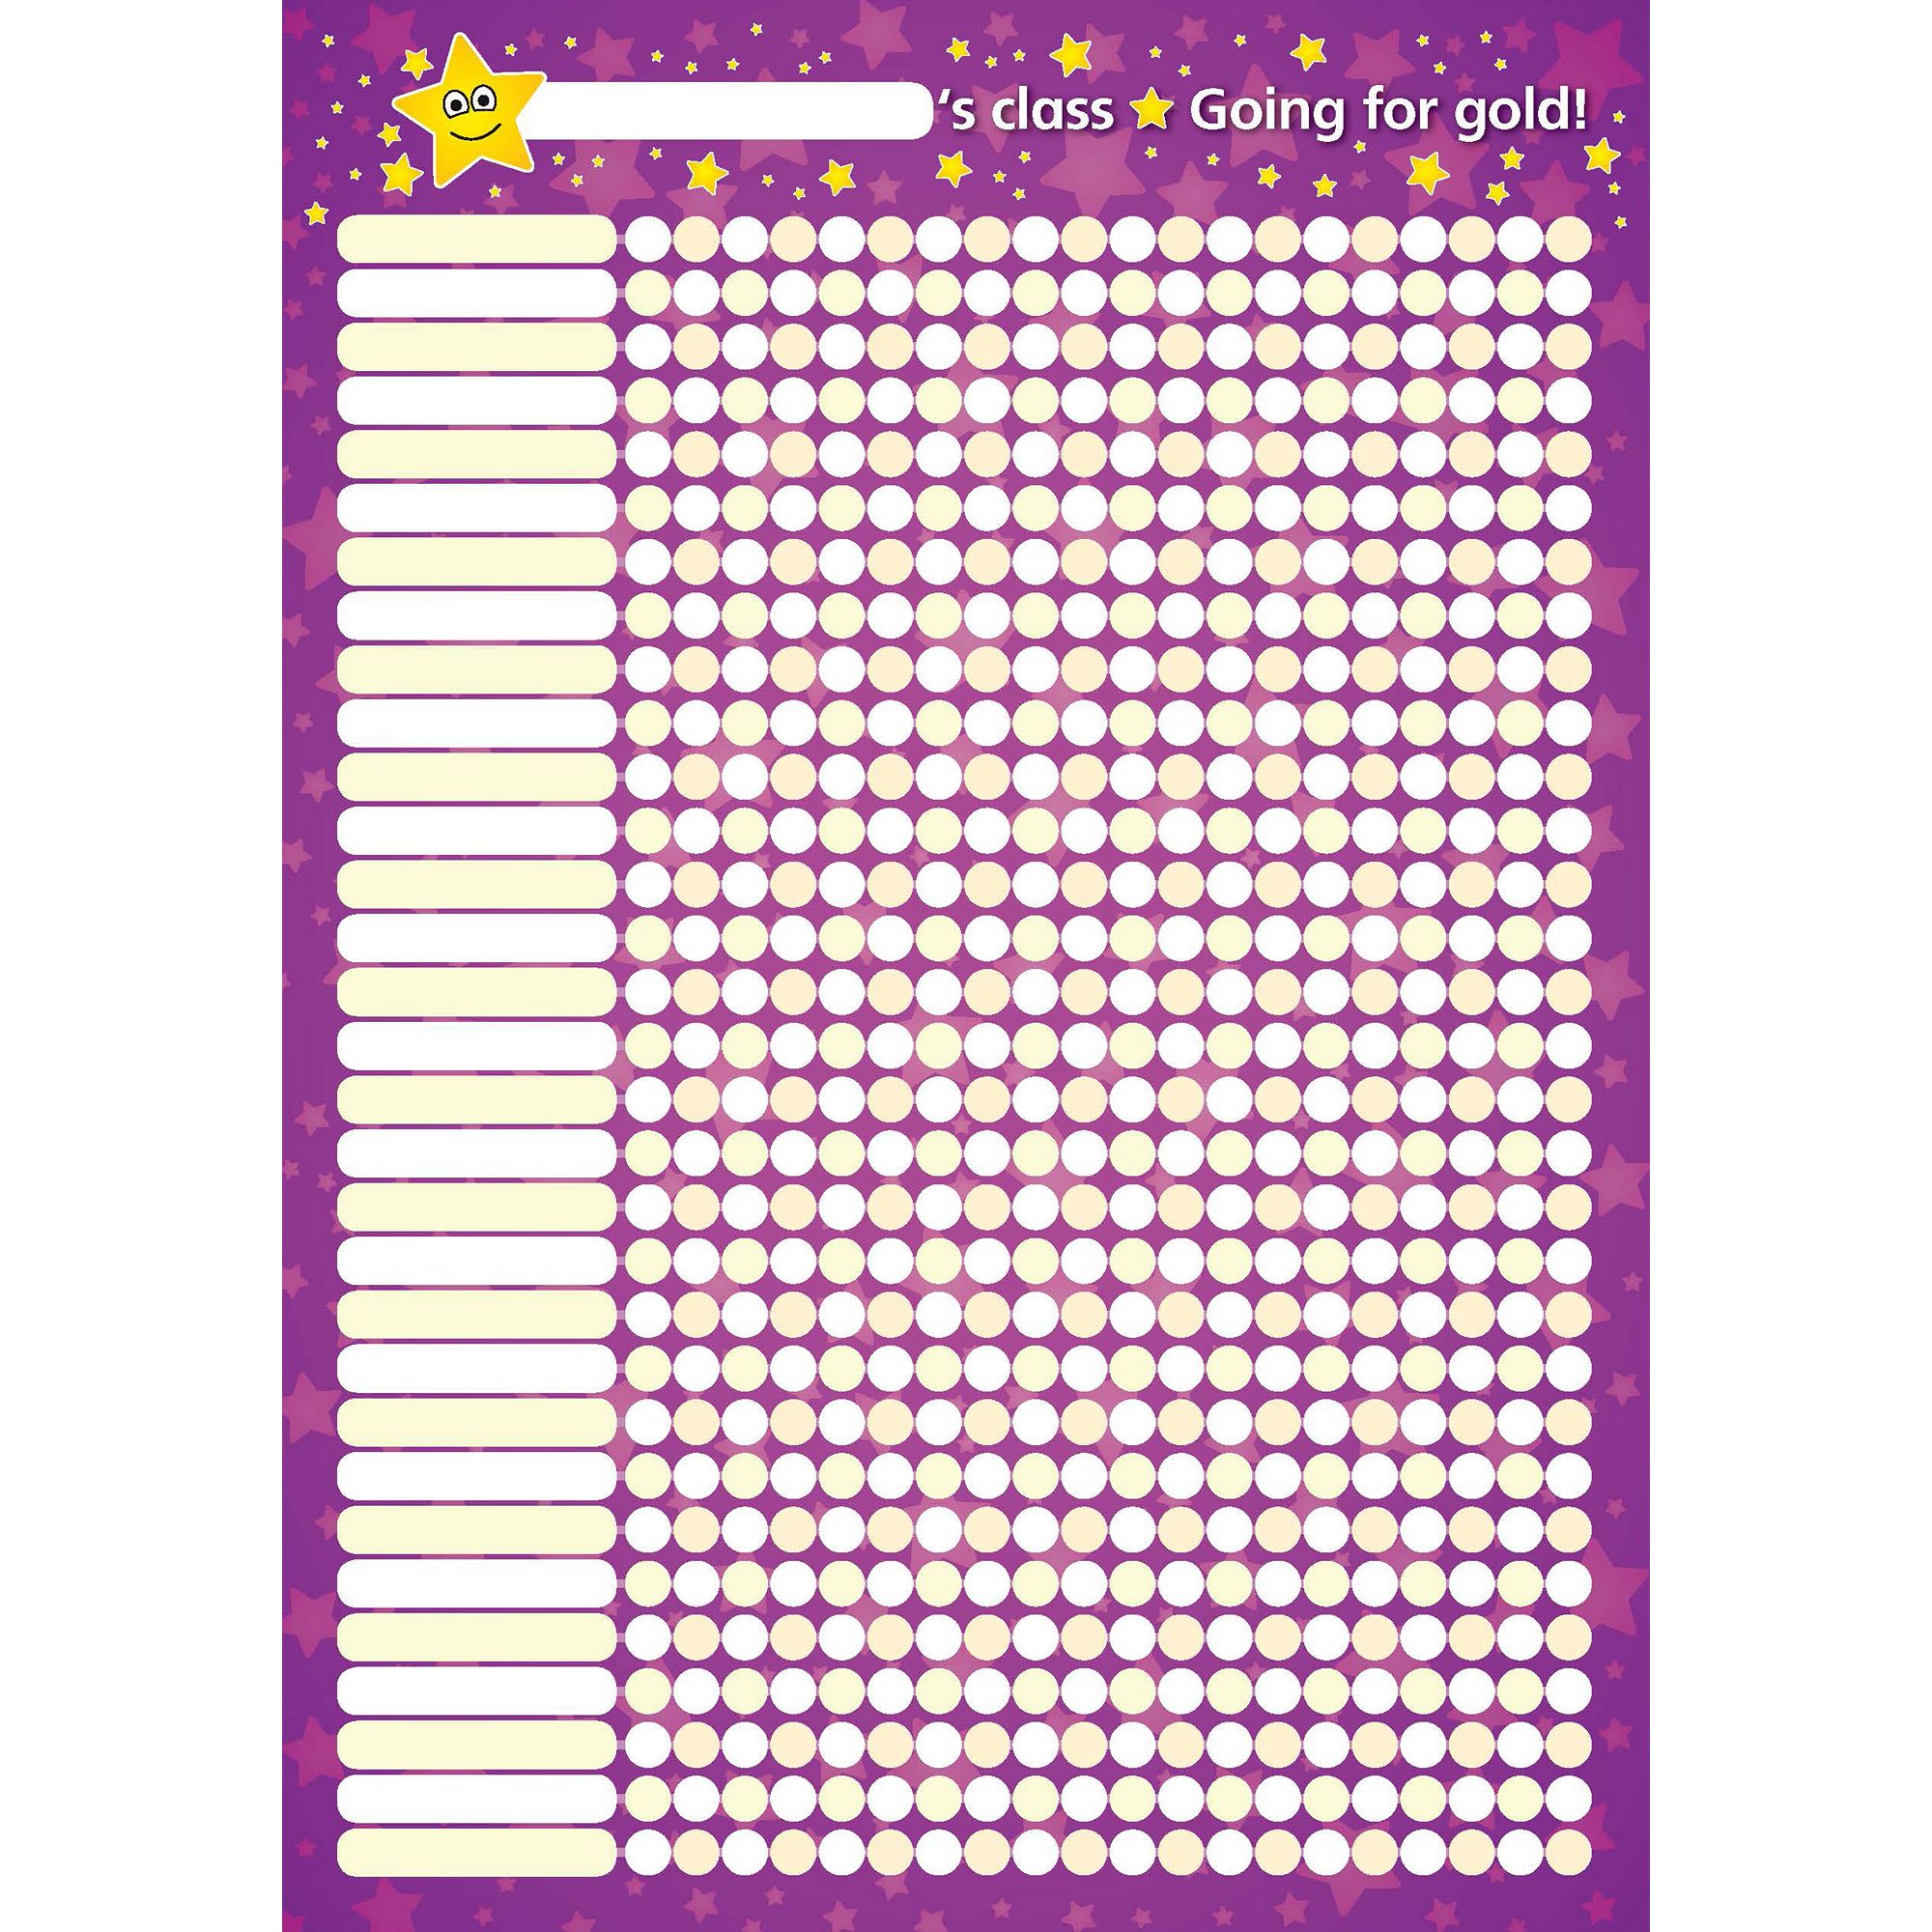 Classroom Sticker Reward Chart